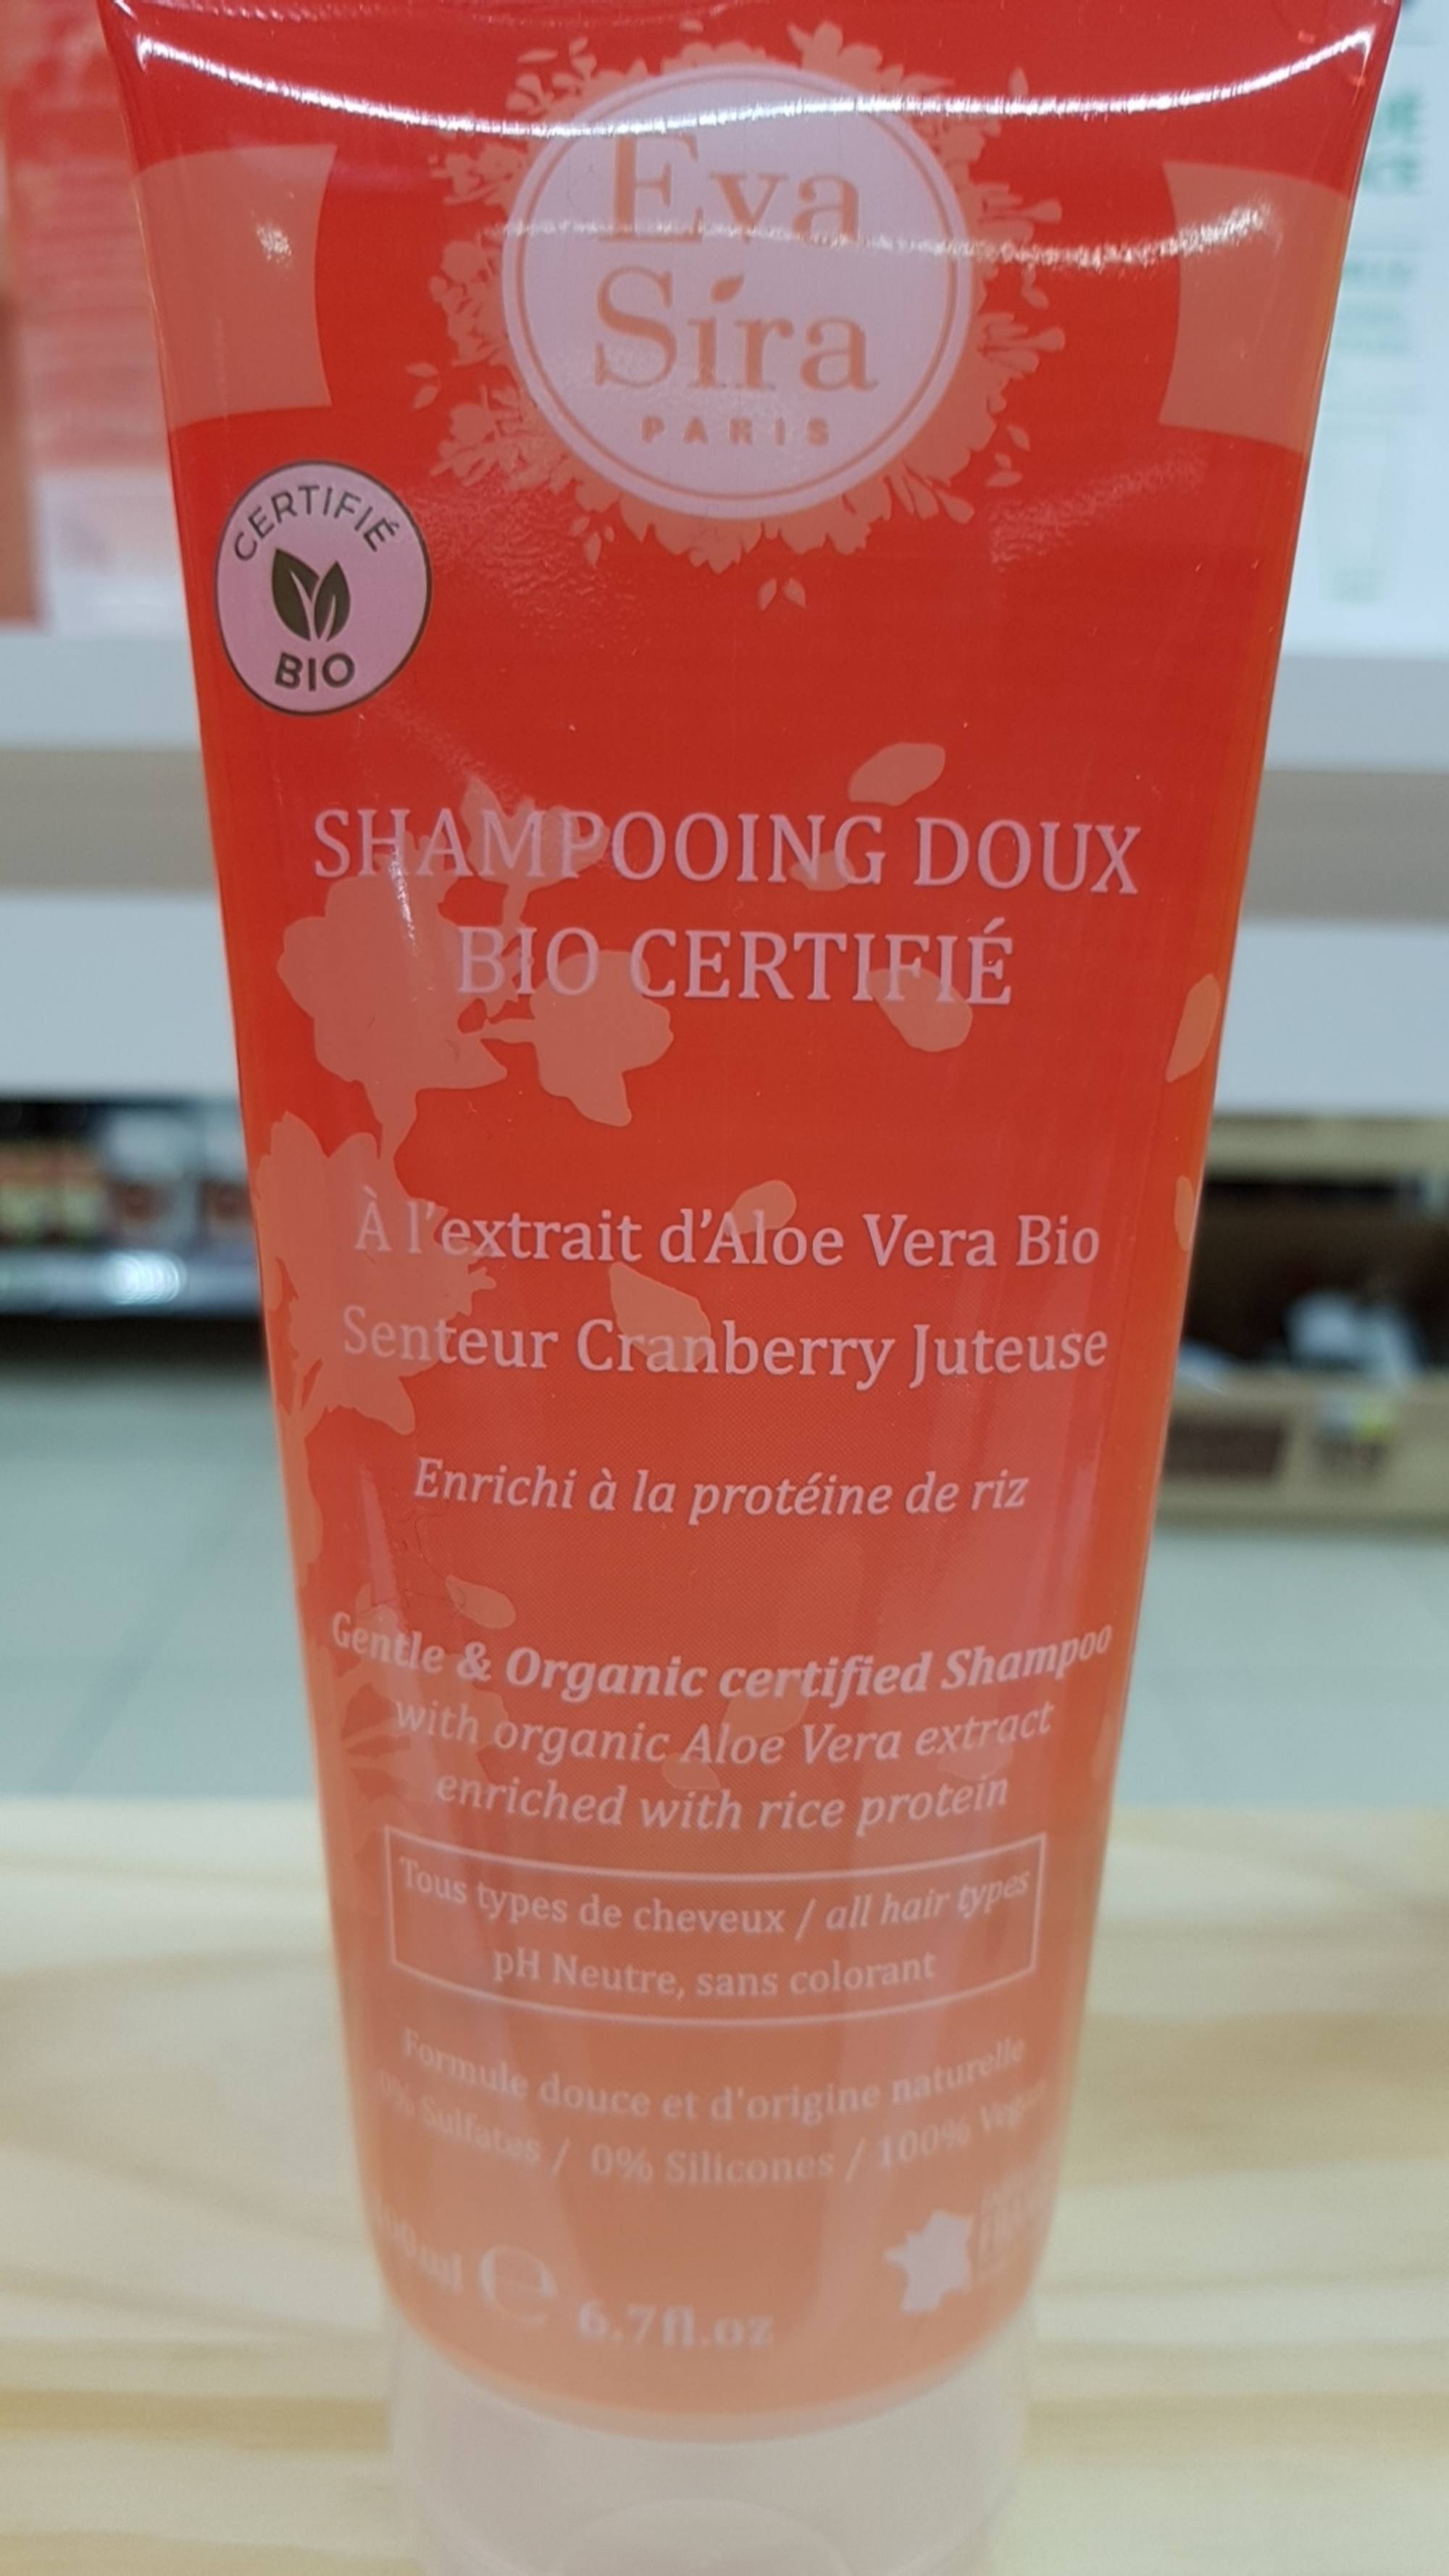 EVA SIRA - Shampooing doux bio certifié 